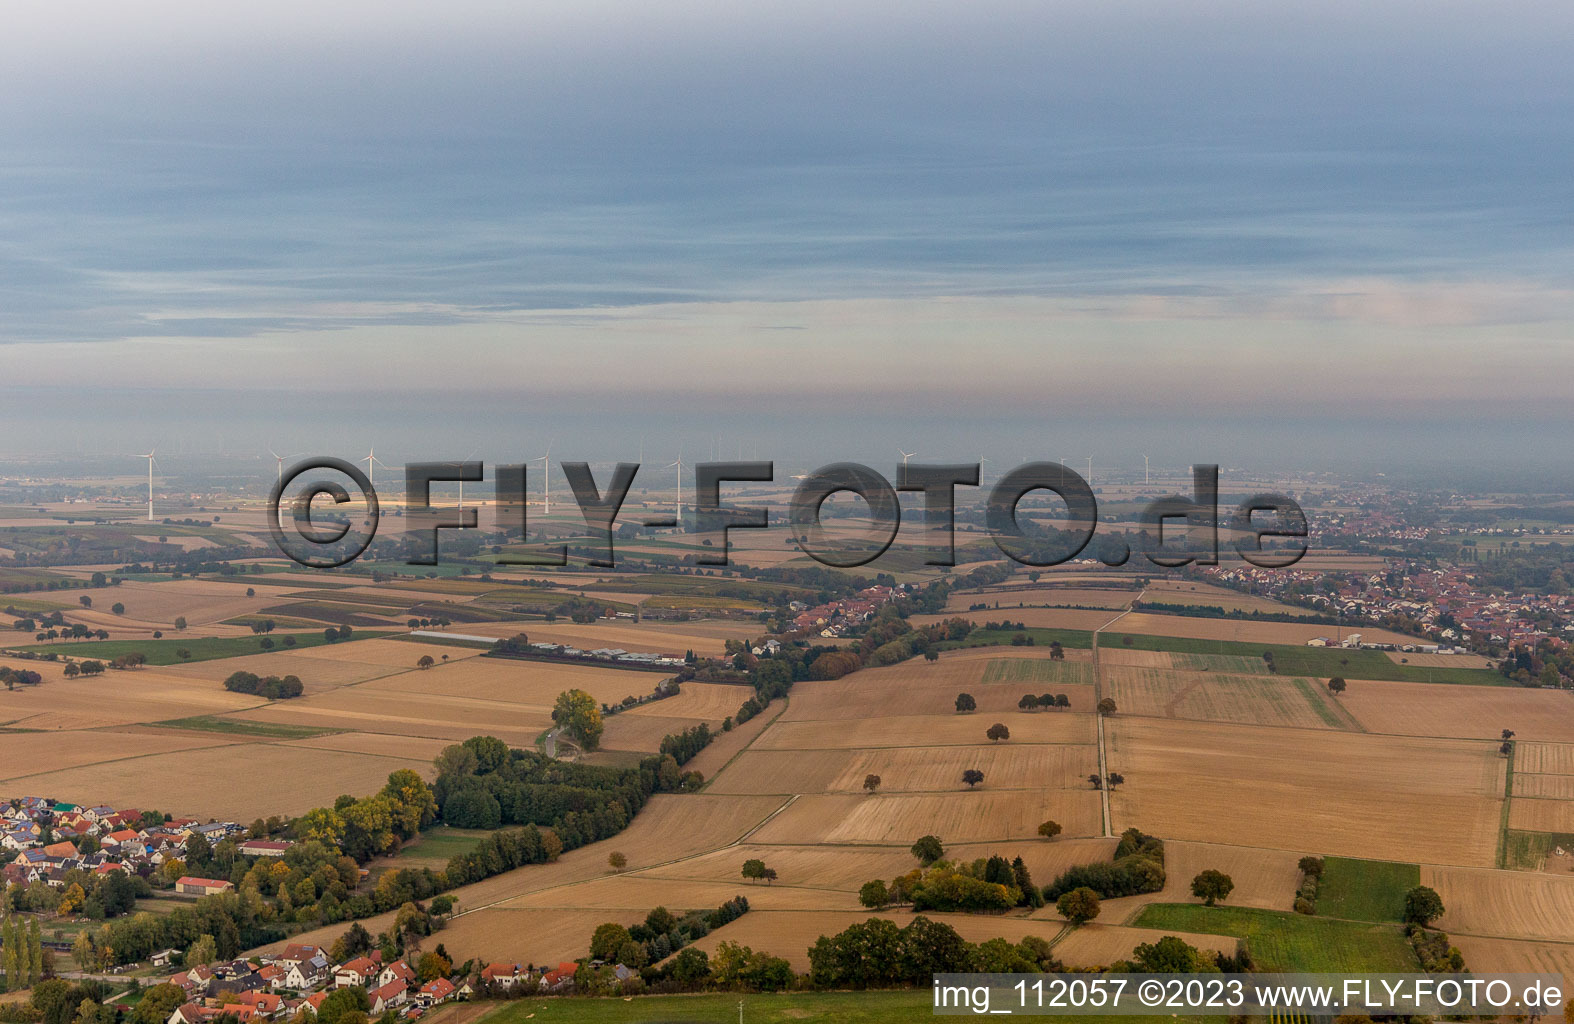 Photographie aérienne de Parc éolien EnBW - éolienne avec 6 éoliennes à Freckenfeld dans le département Rhénanie-Palatinat, Allemagne